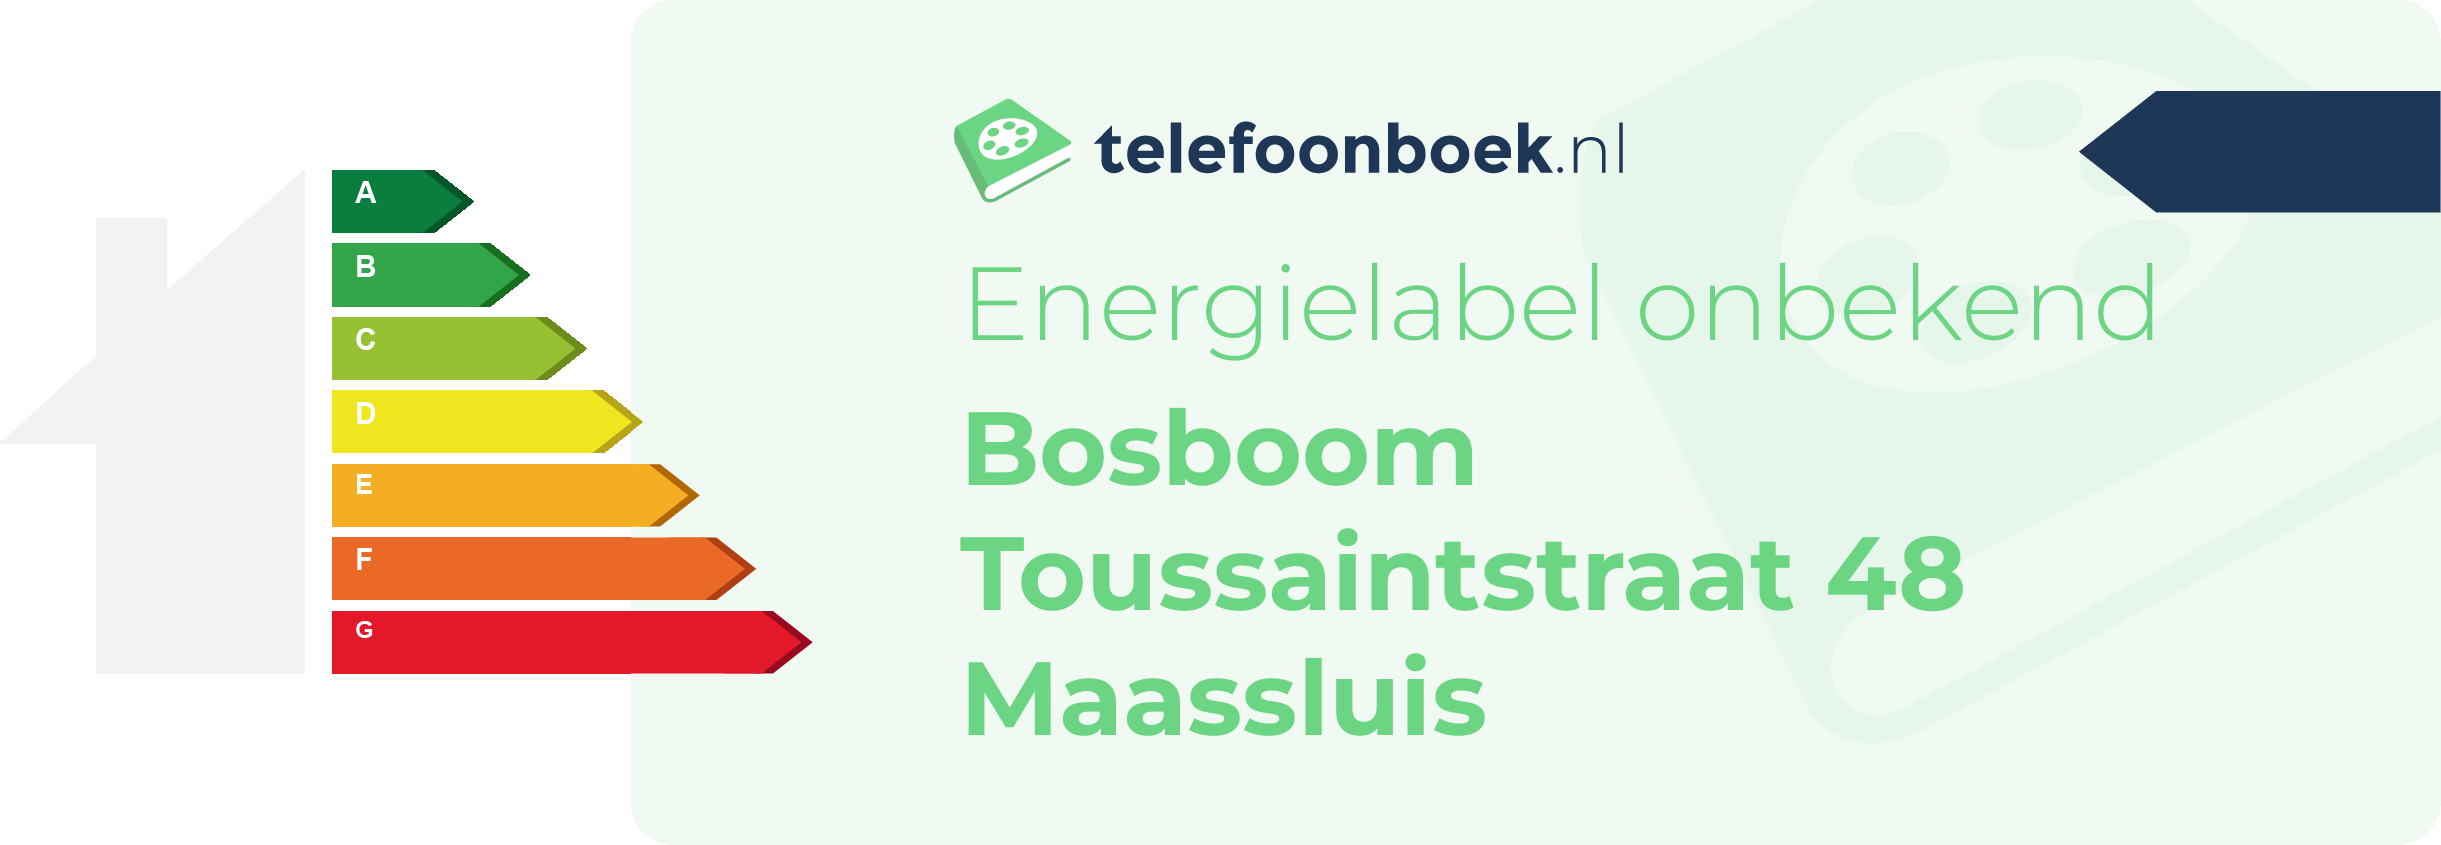 Energielabel Bosboom Toussaintstraat 48 Maassluis